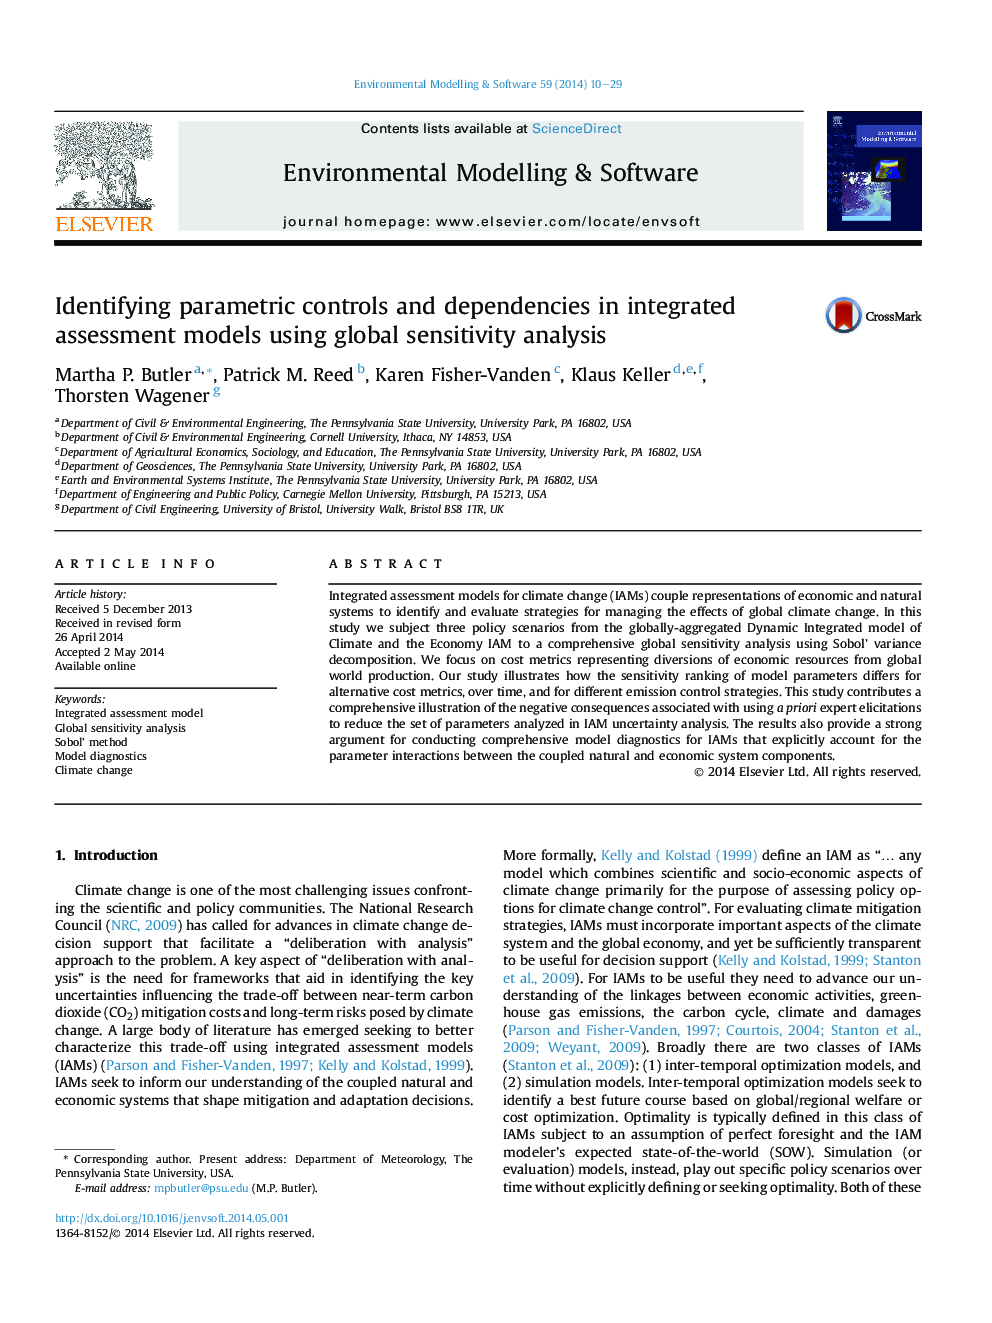 شناسایی کنترل های پارامتری و وابستگی ها در مدل های ارزیابی یکپارچه با استفاده از تجزیه و تحلیل حساسیت جهانی 